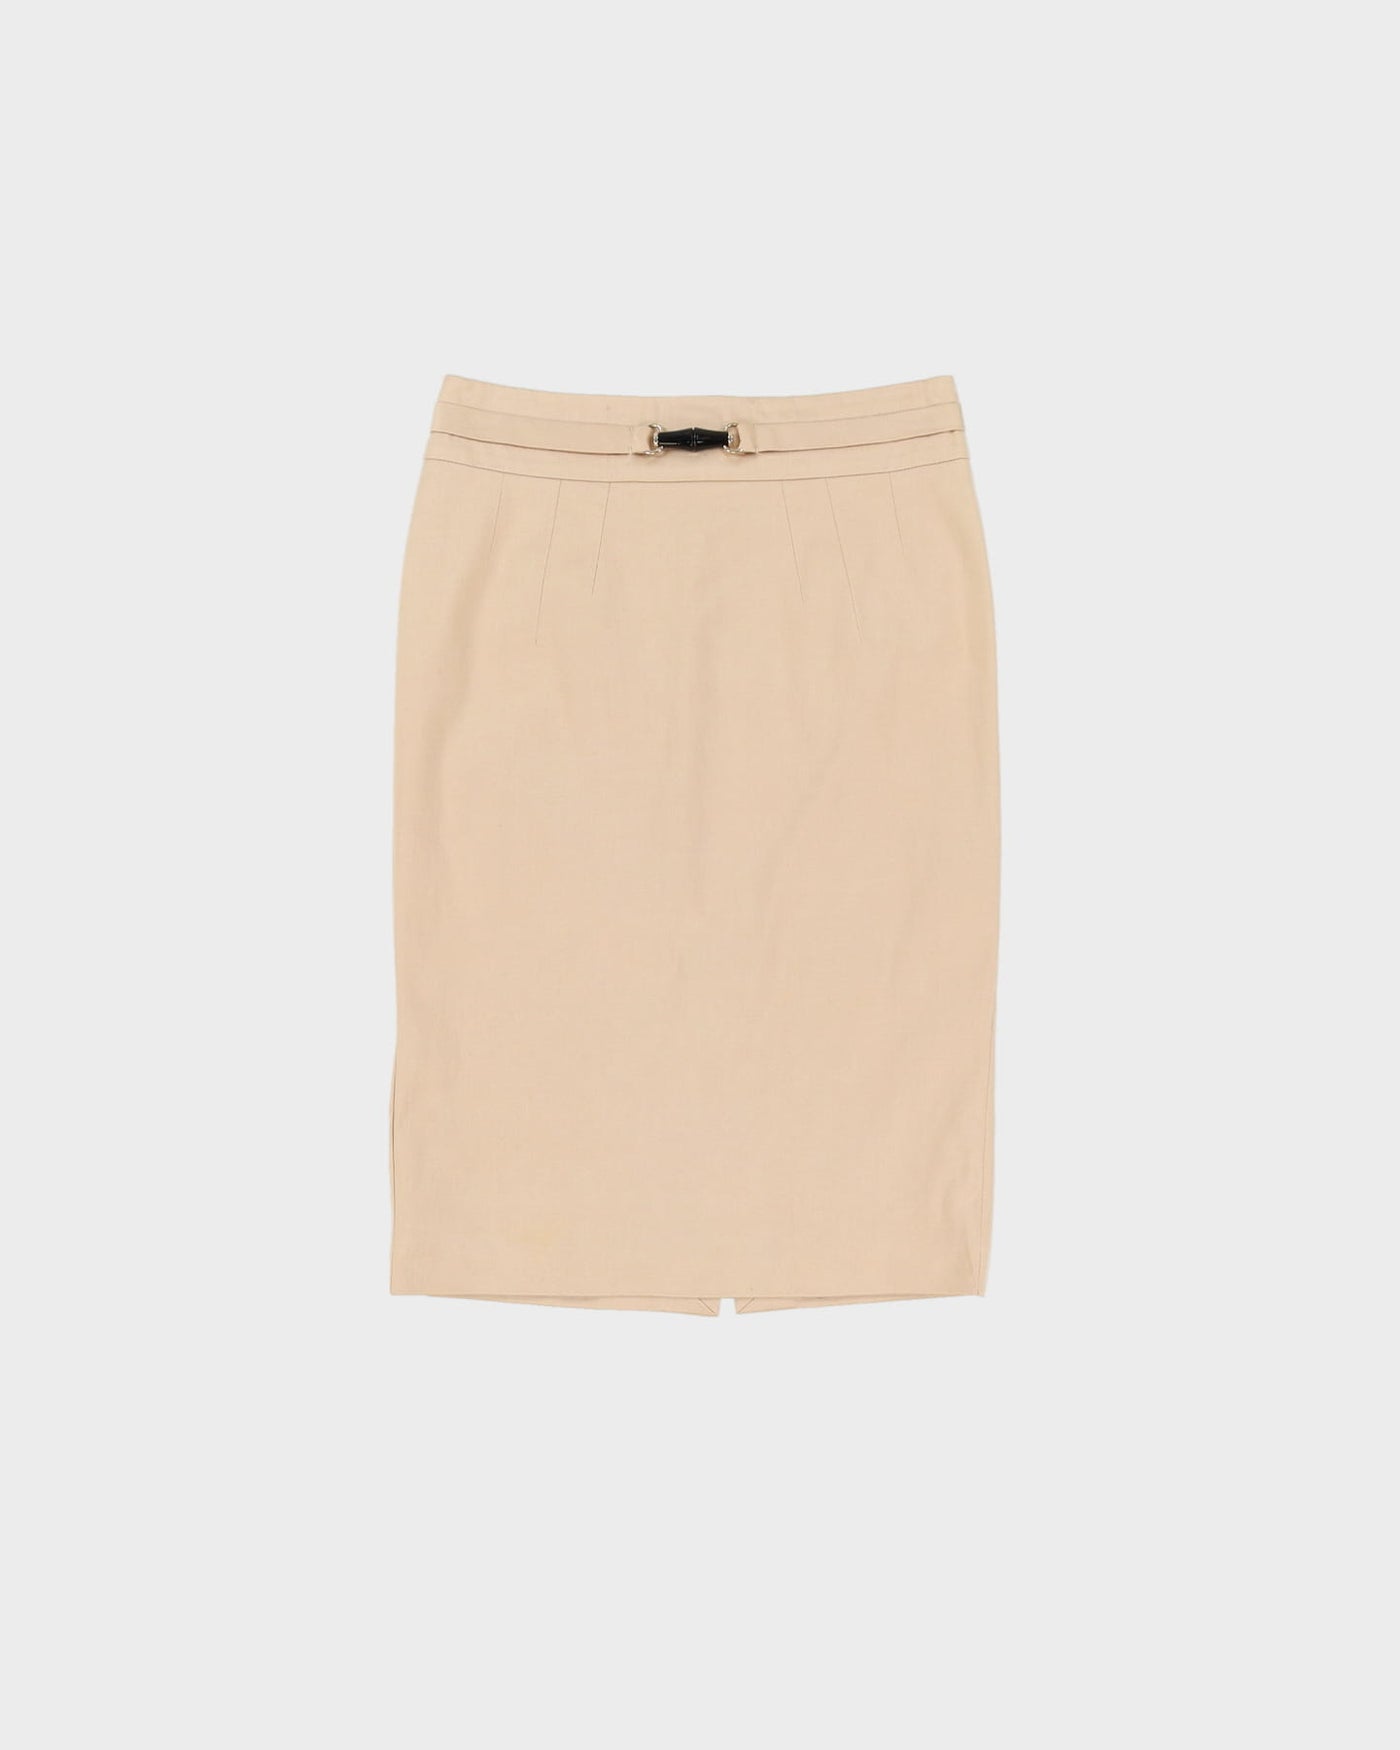 Gucci Beige Cotton Pencil Skirt- S